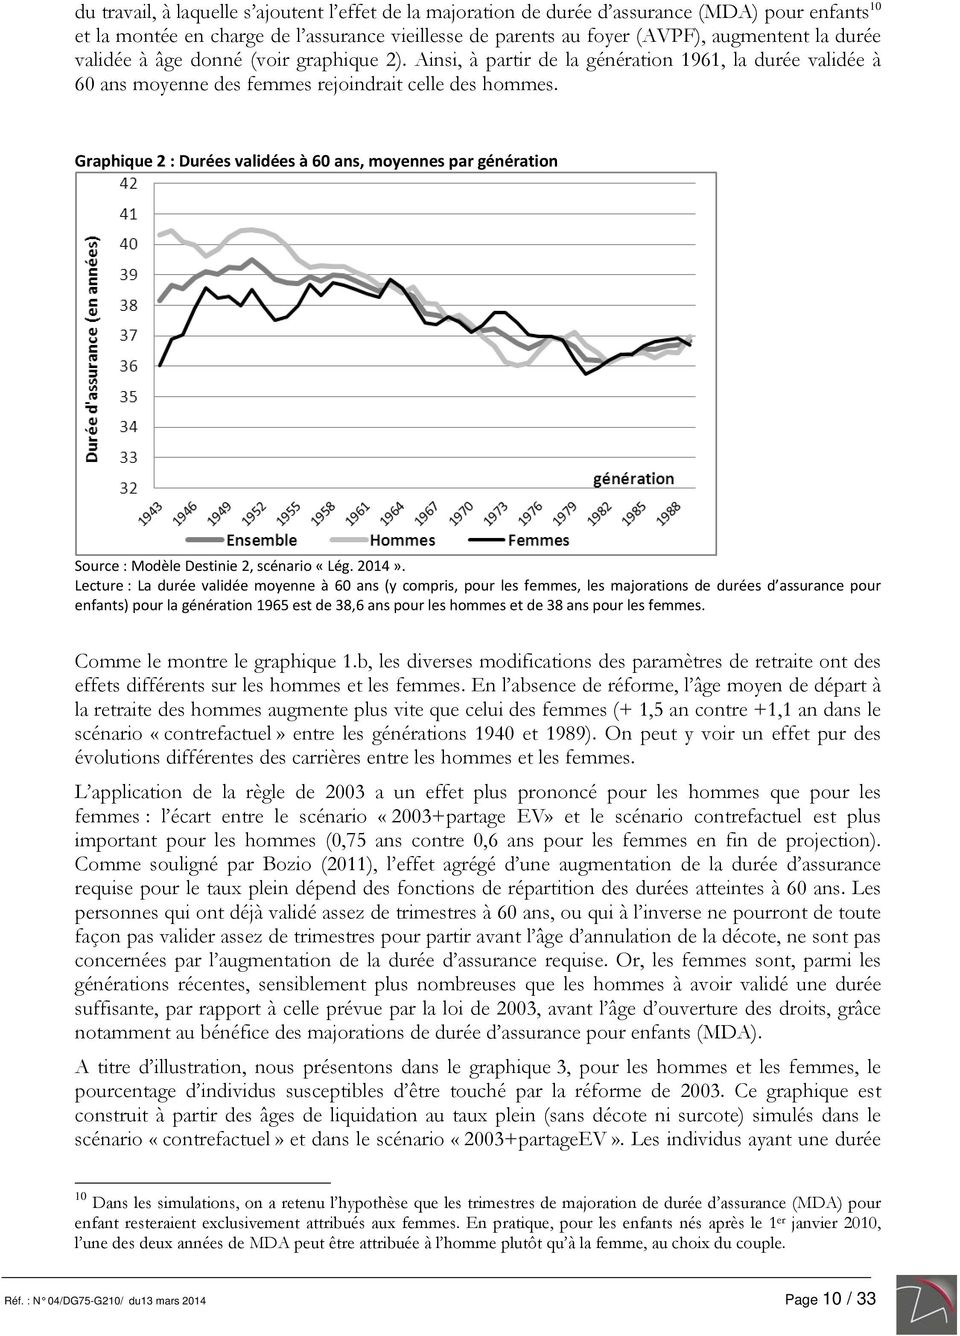 Graphique 2 : Durées validées à 60 ans, moyennes par génération Source : Modèle Destinie 2, scénario «Lég. 2014».